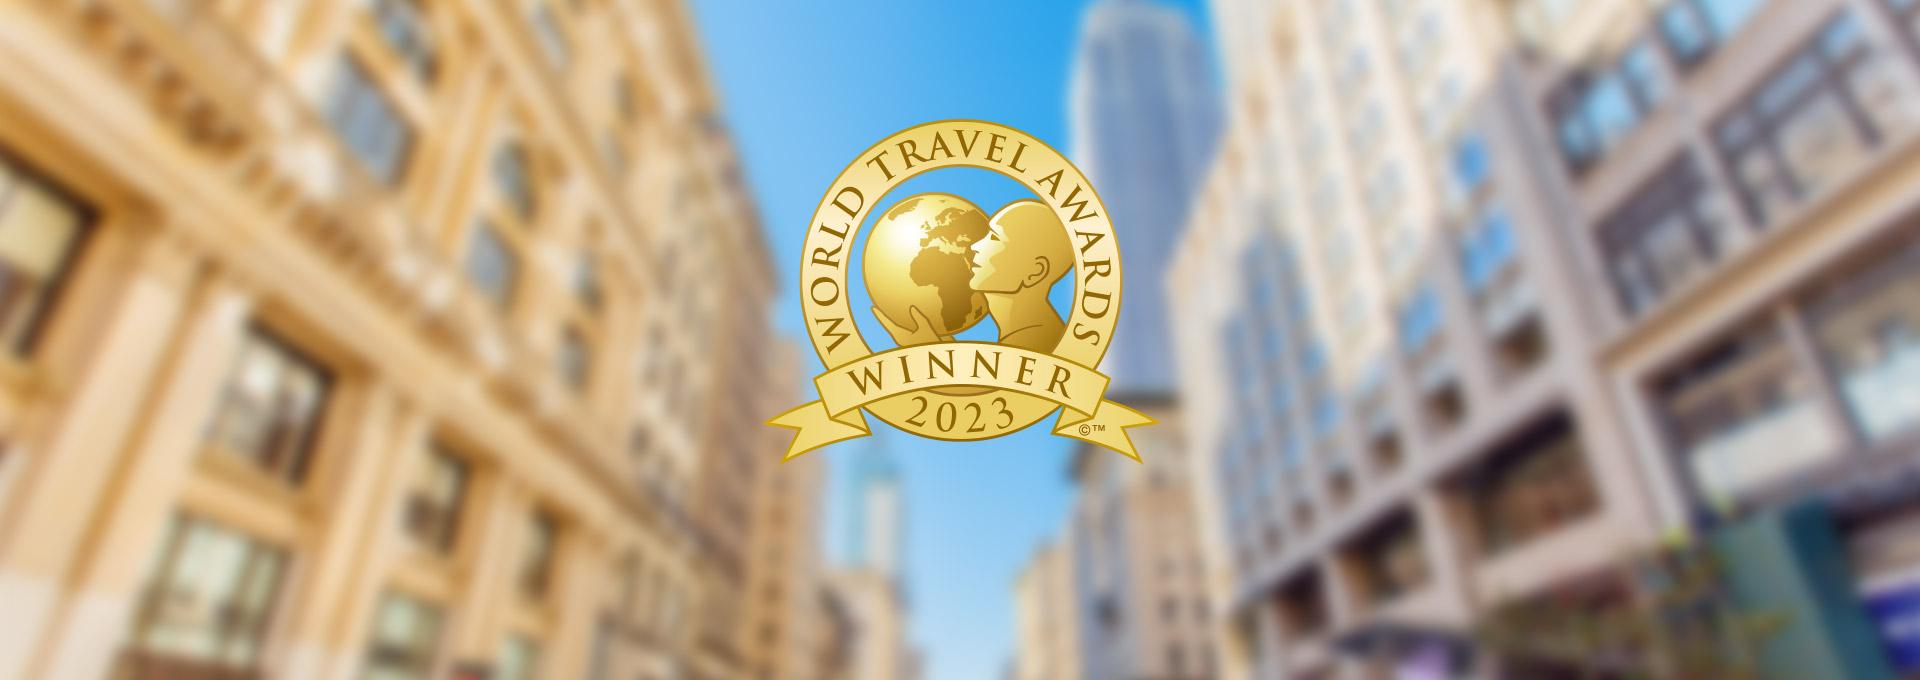 World Travel Awards Winner 2023 banner